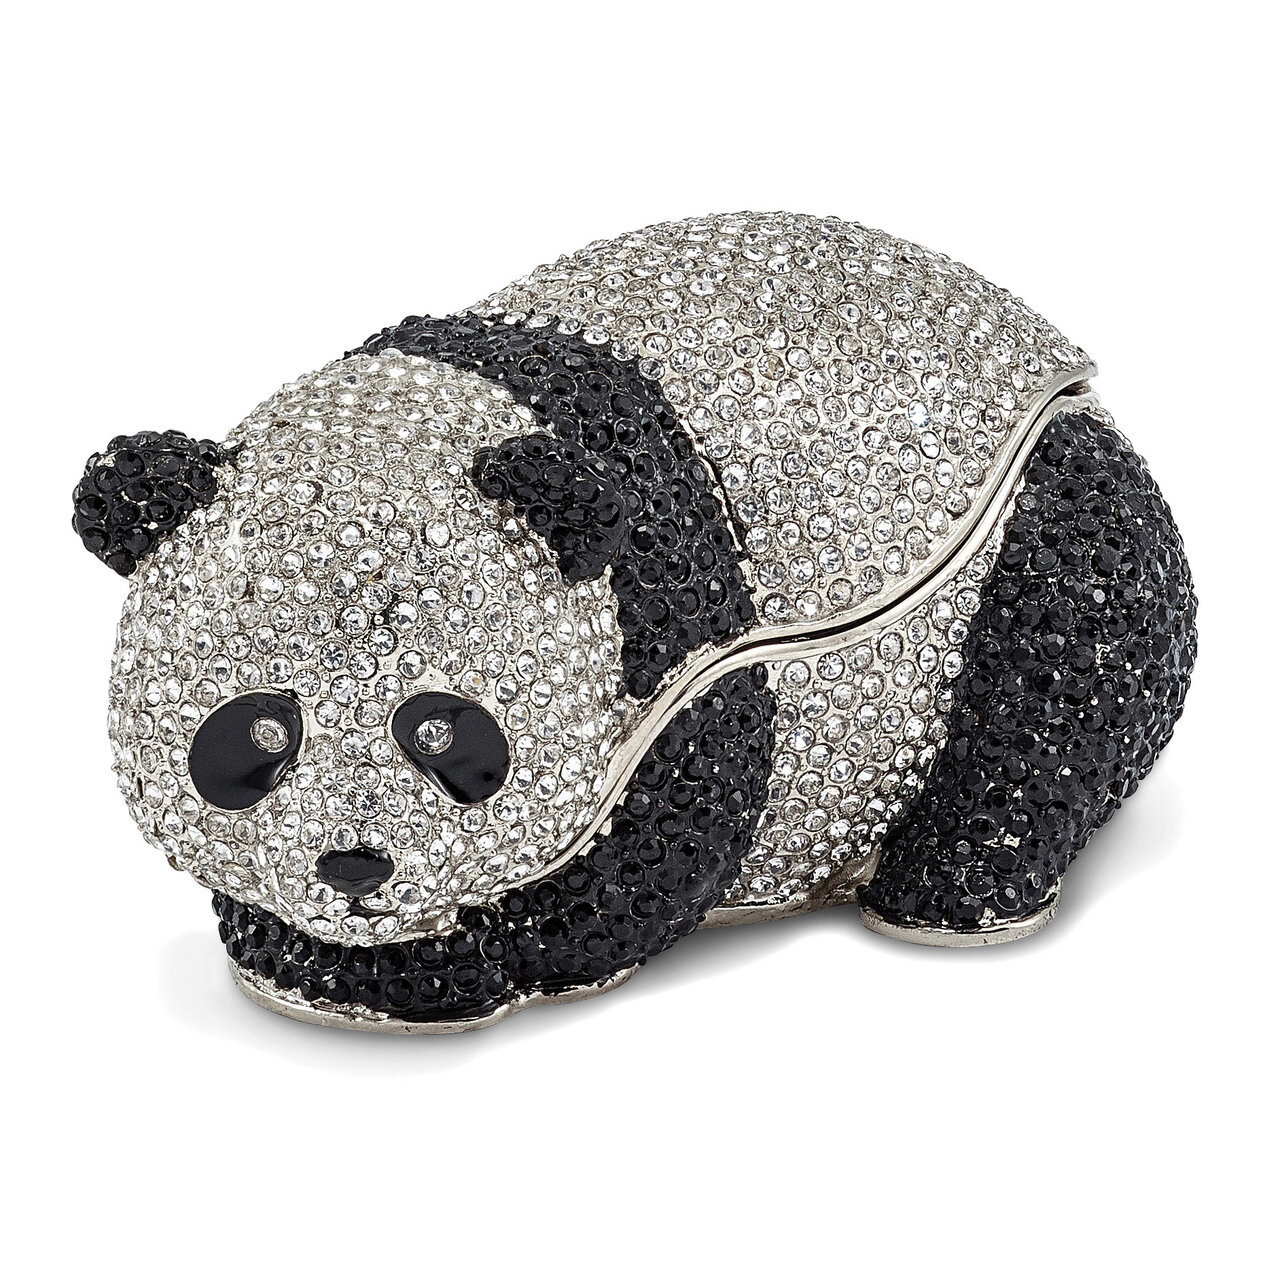 Full Crystal Panda Bear Trinket Box Enamel on Pewter by Jere